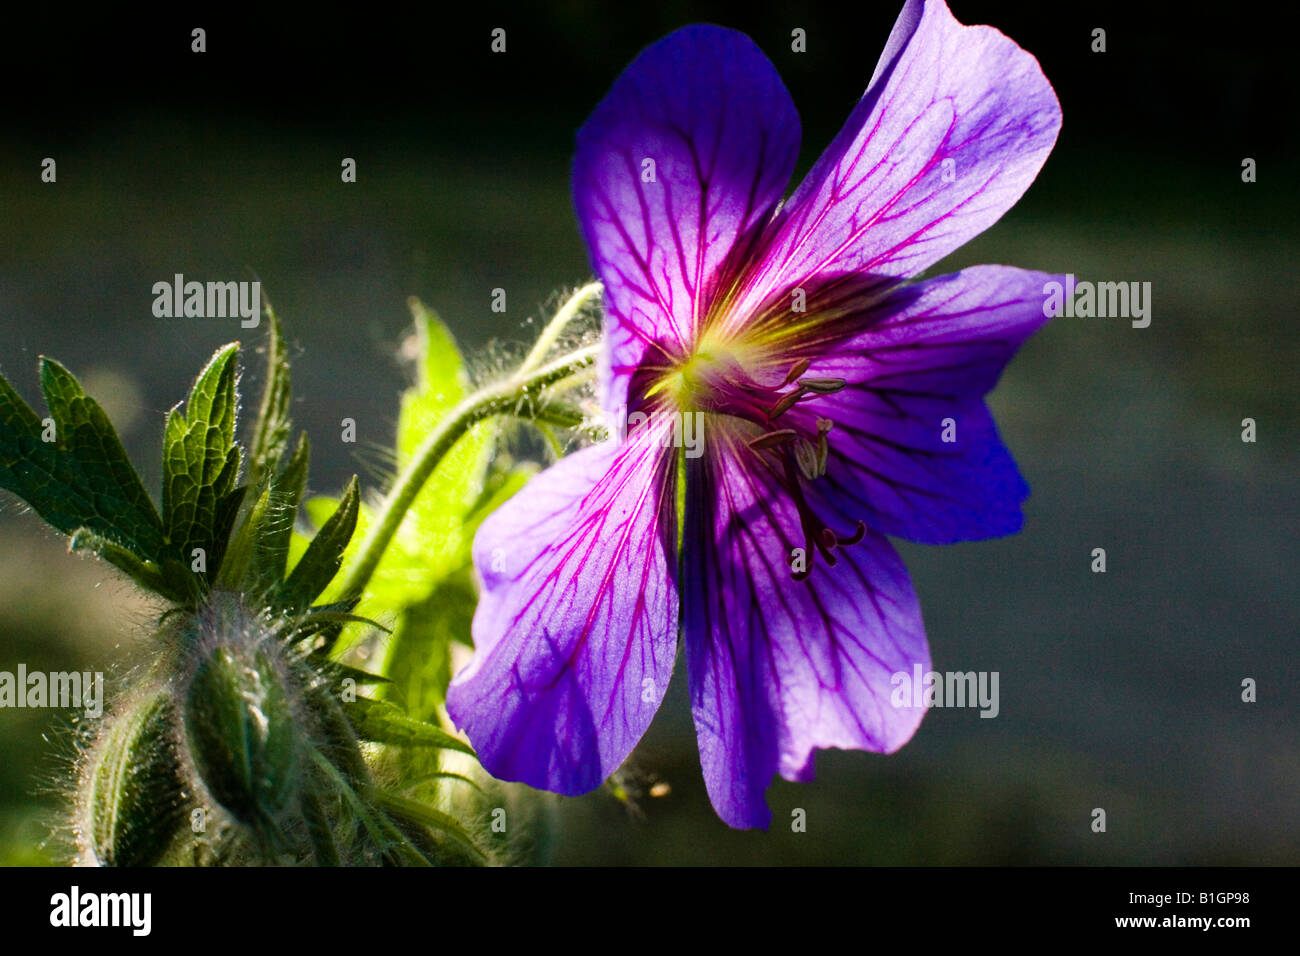 The Geranium ibericum flower in full bloom Stock Photo